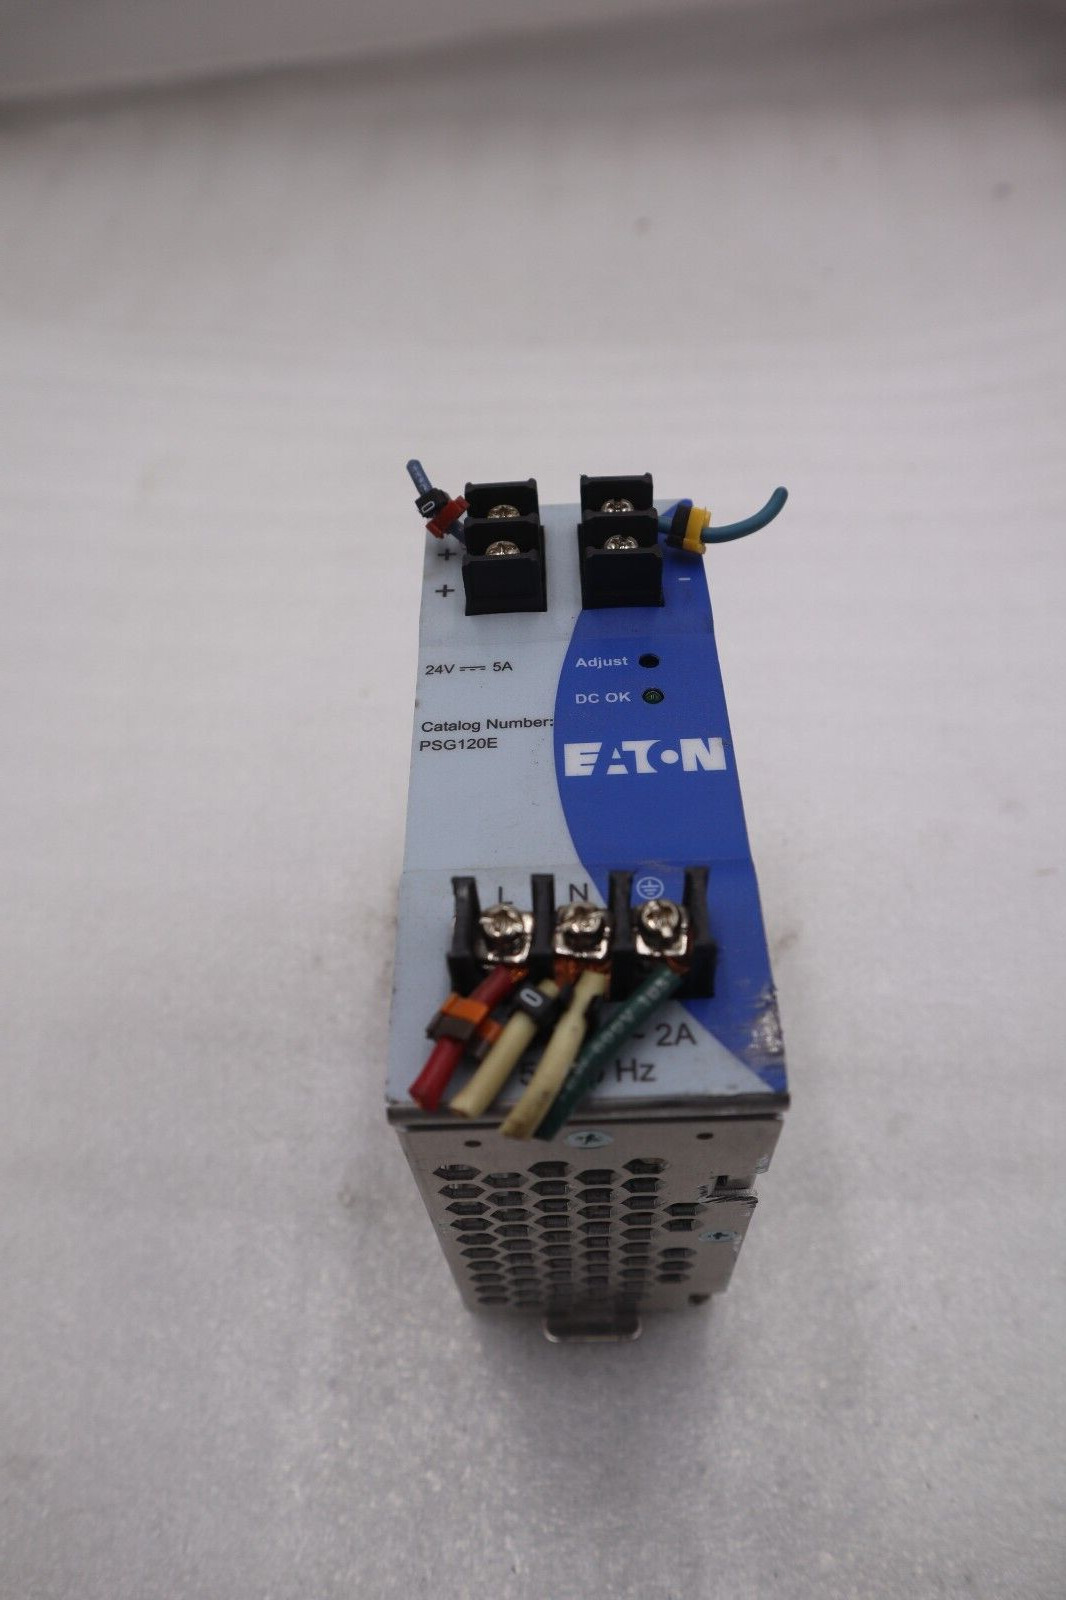 Eaton PSG120E Power Supply 100-240V 2A 50-60Hz Input 24V 5A Output STOCK K-3536